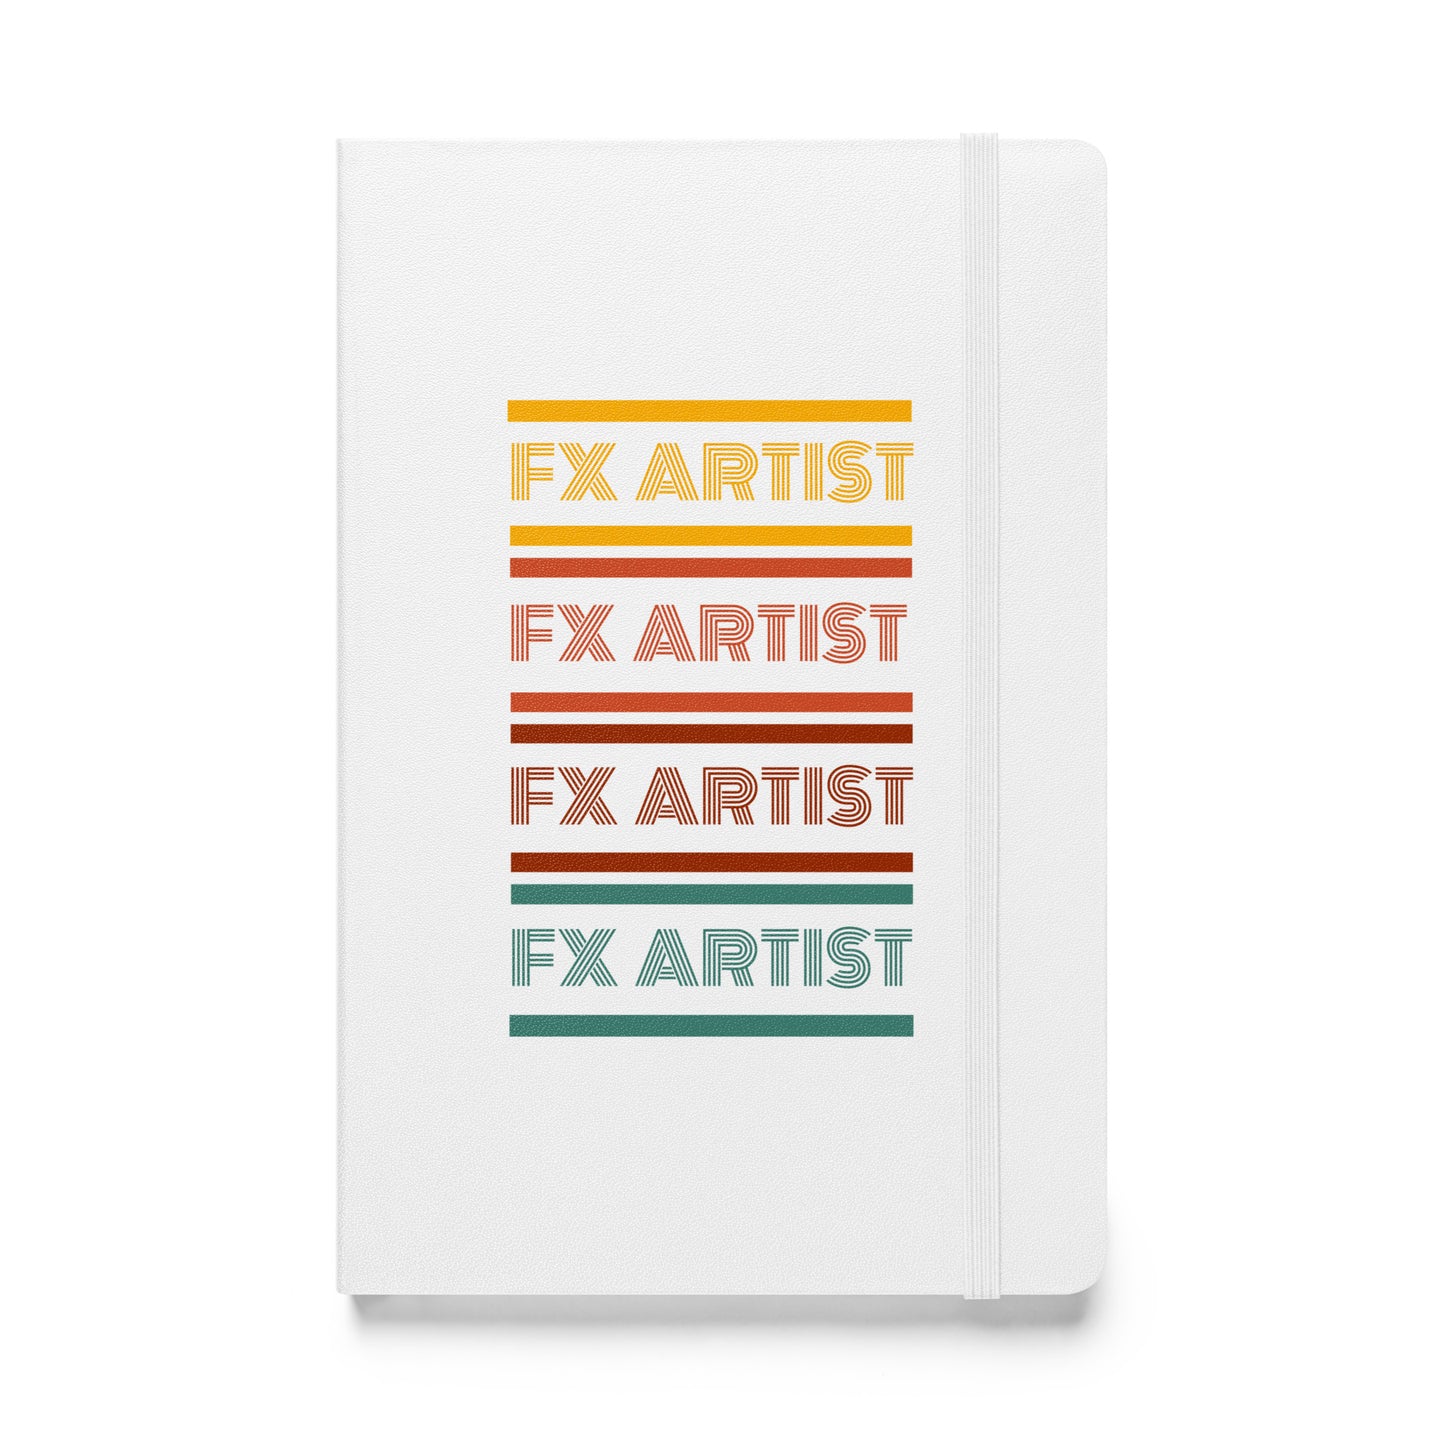 Hardcover bound notebook FX Artist Retro Series - CineQuips